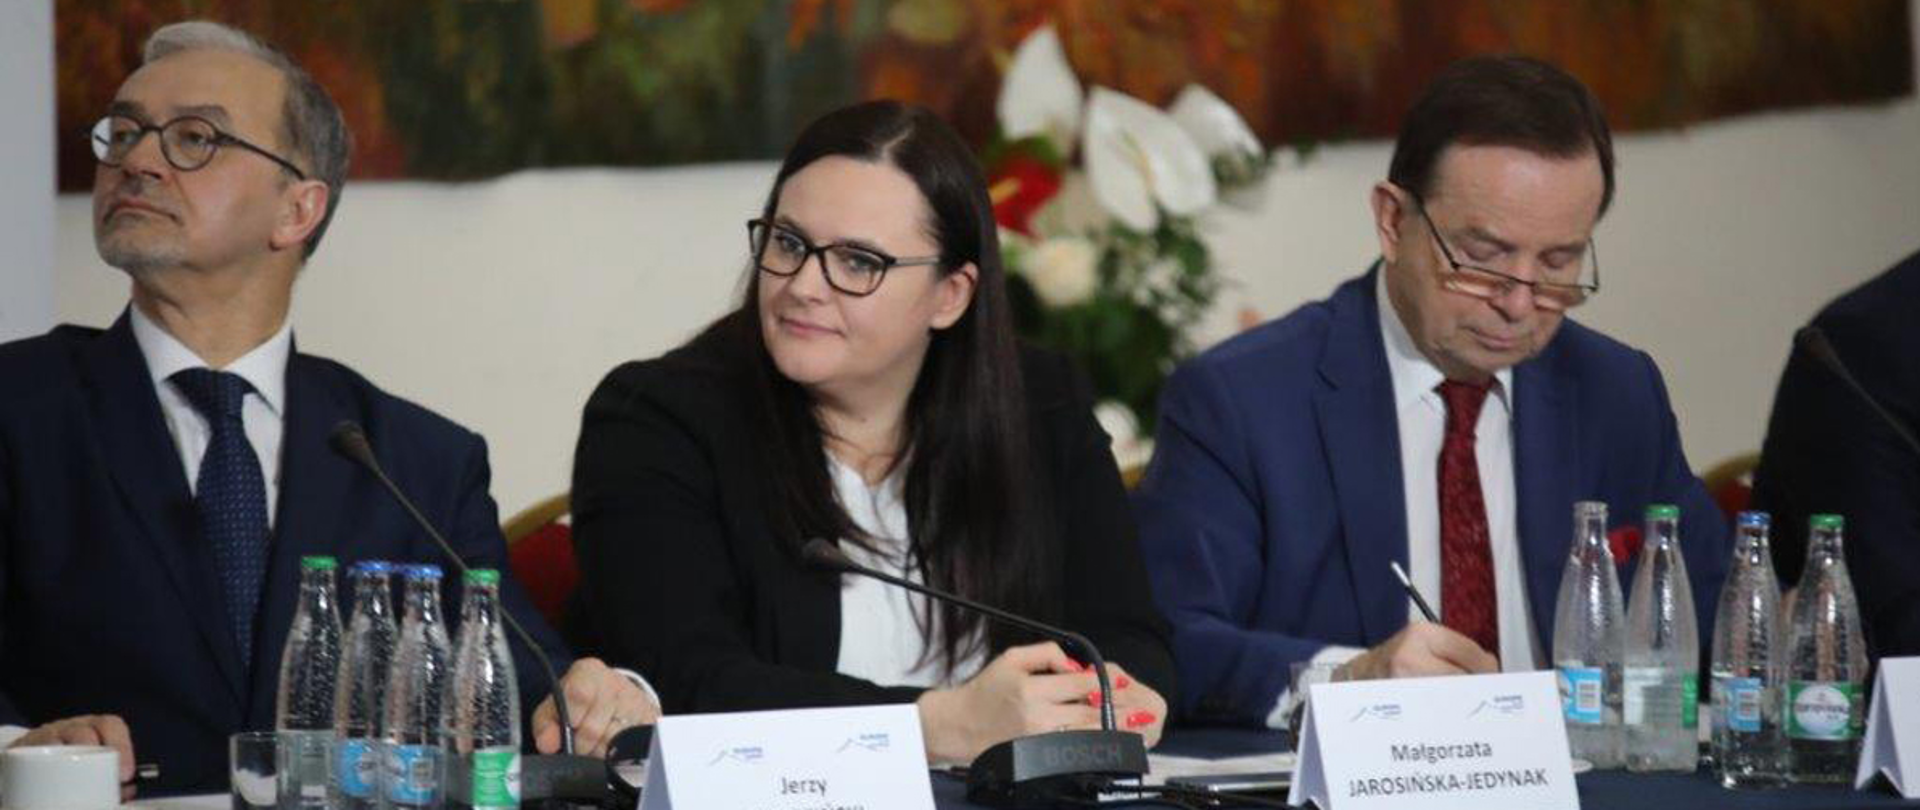 Na zdjęciu przy stole konferencyjnym siedzą trzy osoby: w środku minister Małgorzata Jarosińska-Jedynak, po prawej stronie marszałek województwa podkarpackiego Władysław Ortyl, po lewej Jerzy Kwieciński, prezes PGNiG.